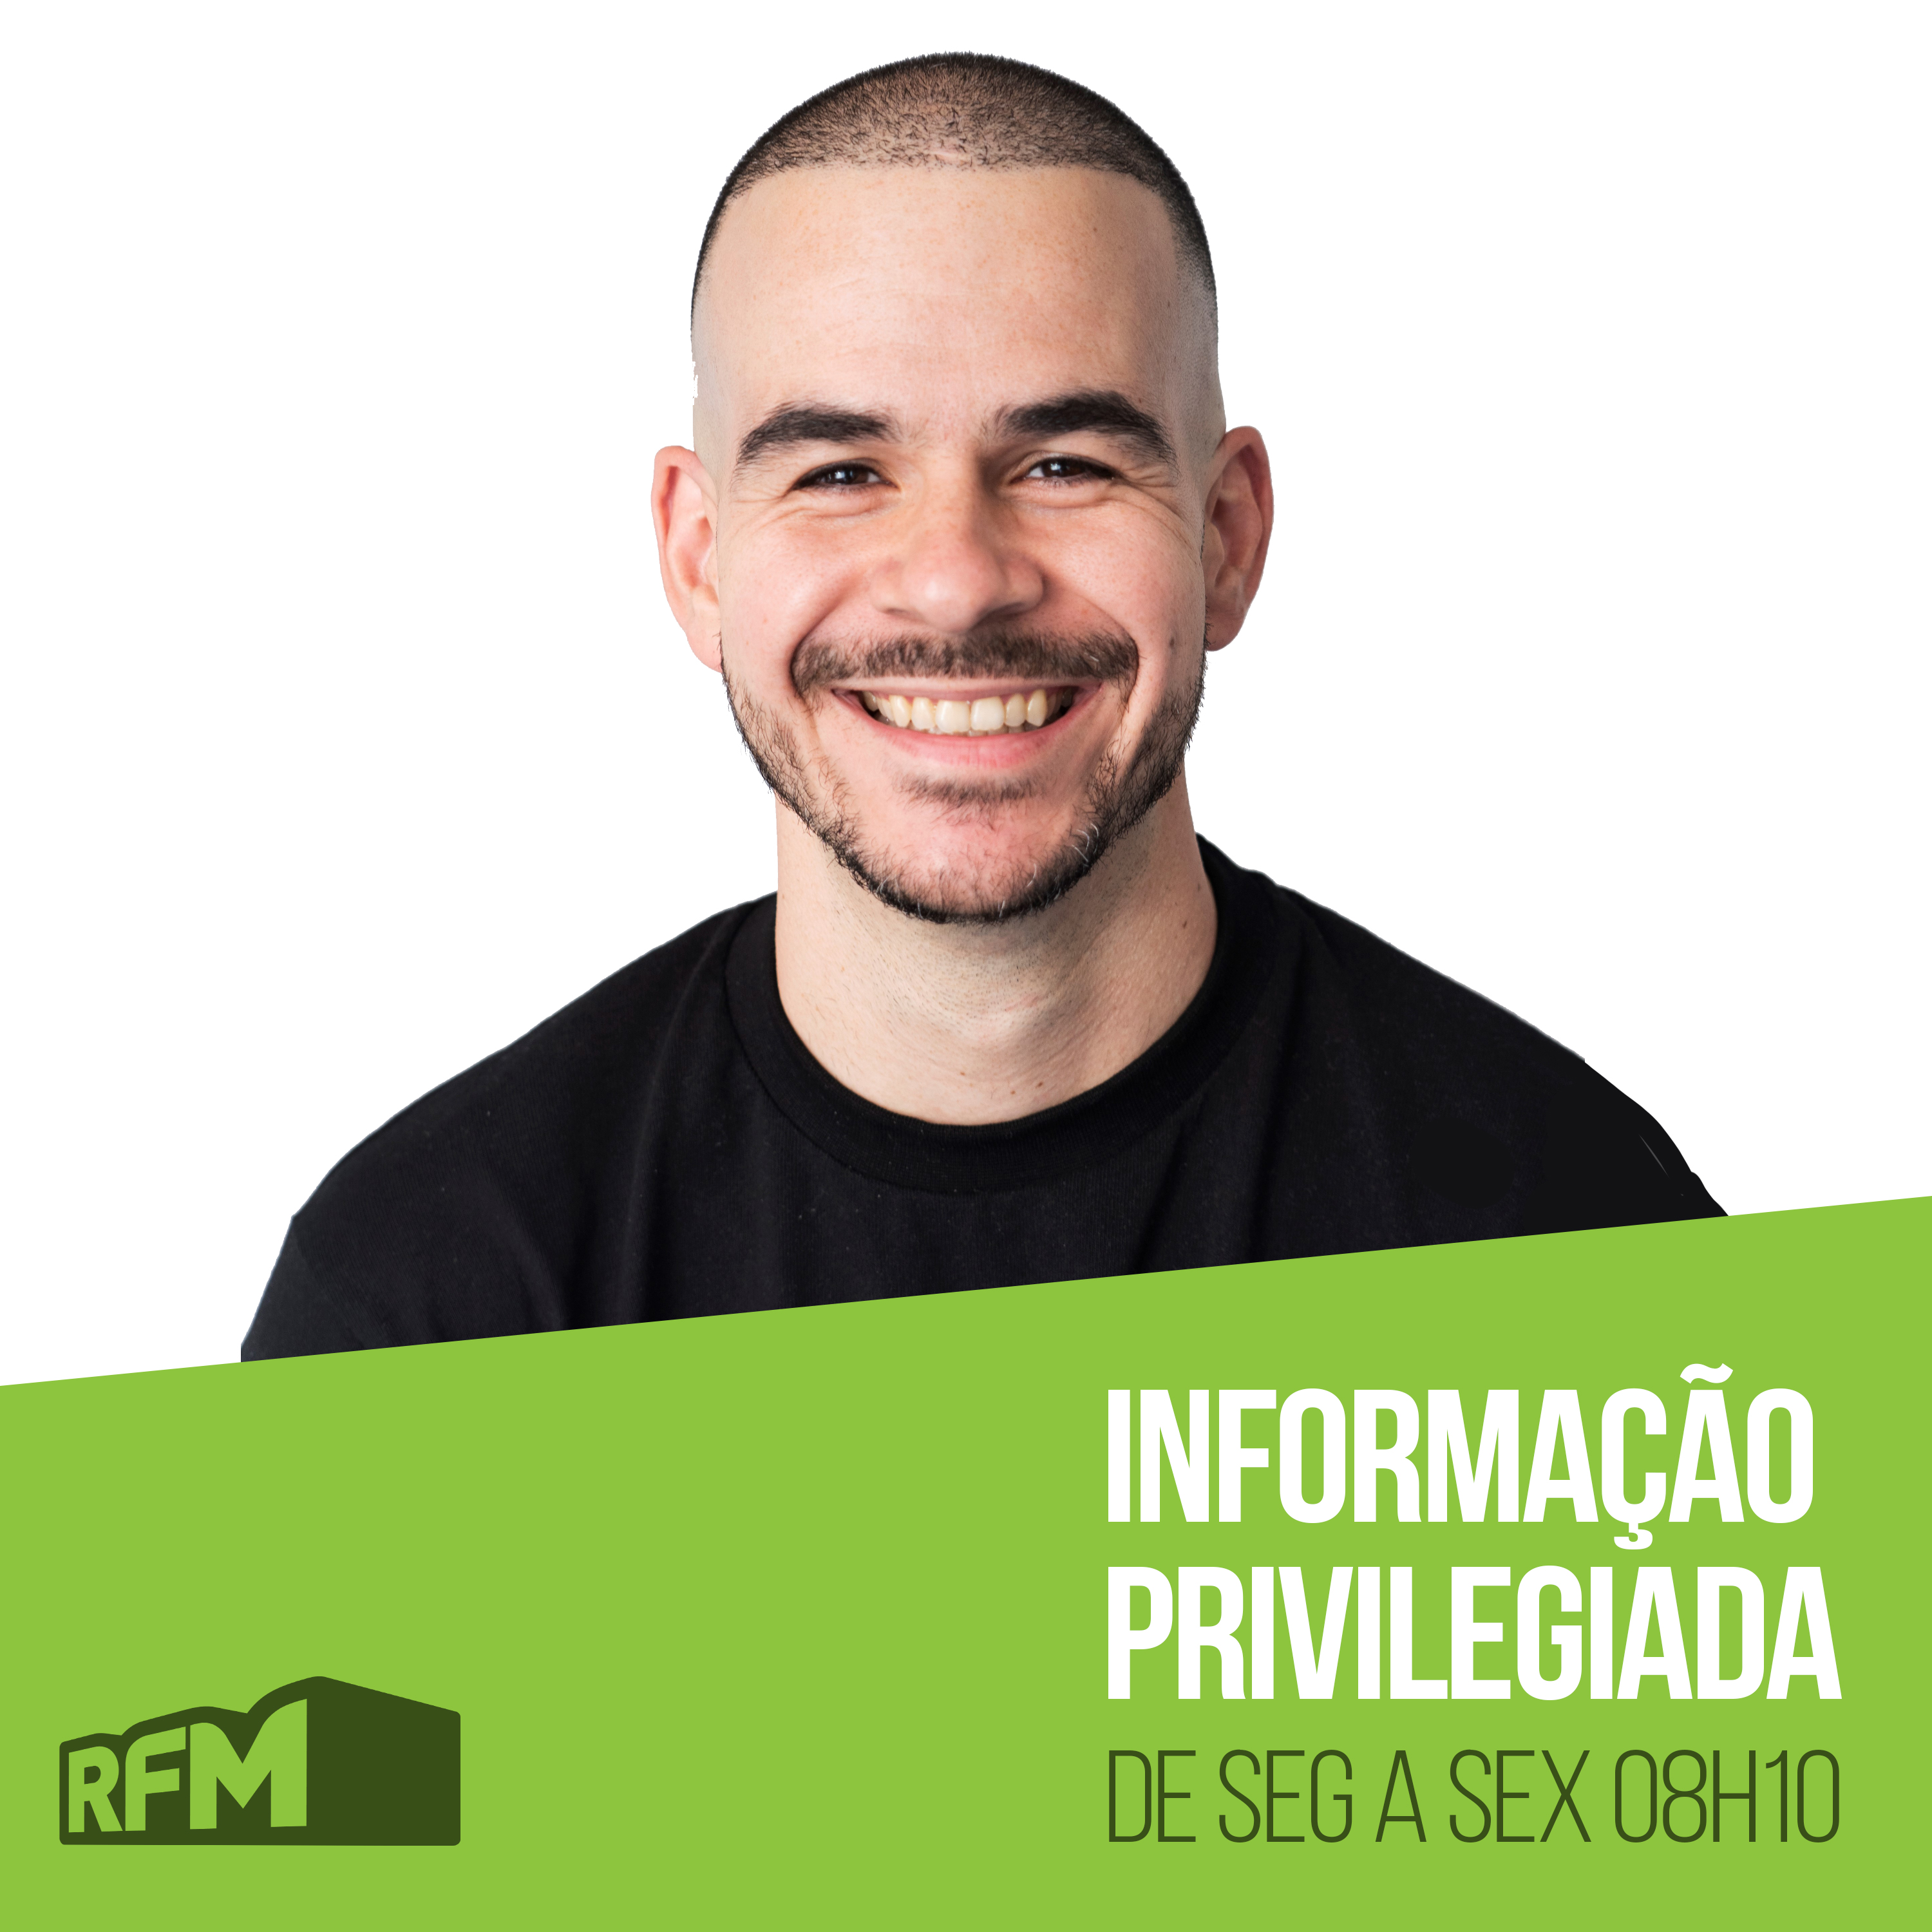 RFM - Informação Privilegiada: COMIDA DA AVO É SEMPRE MELHOR!